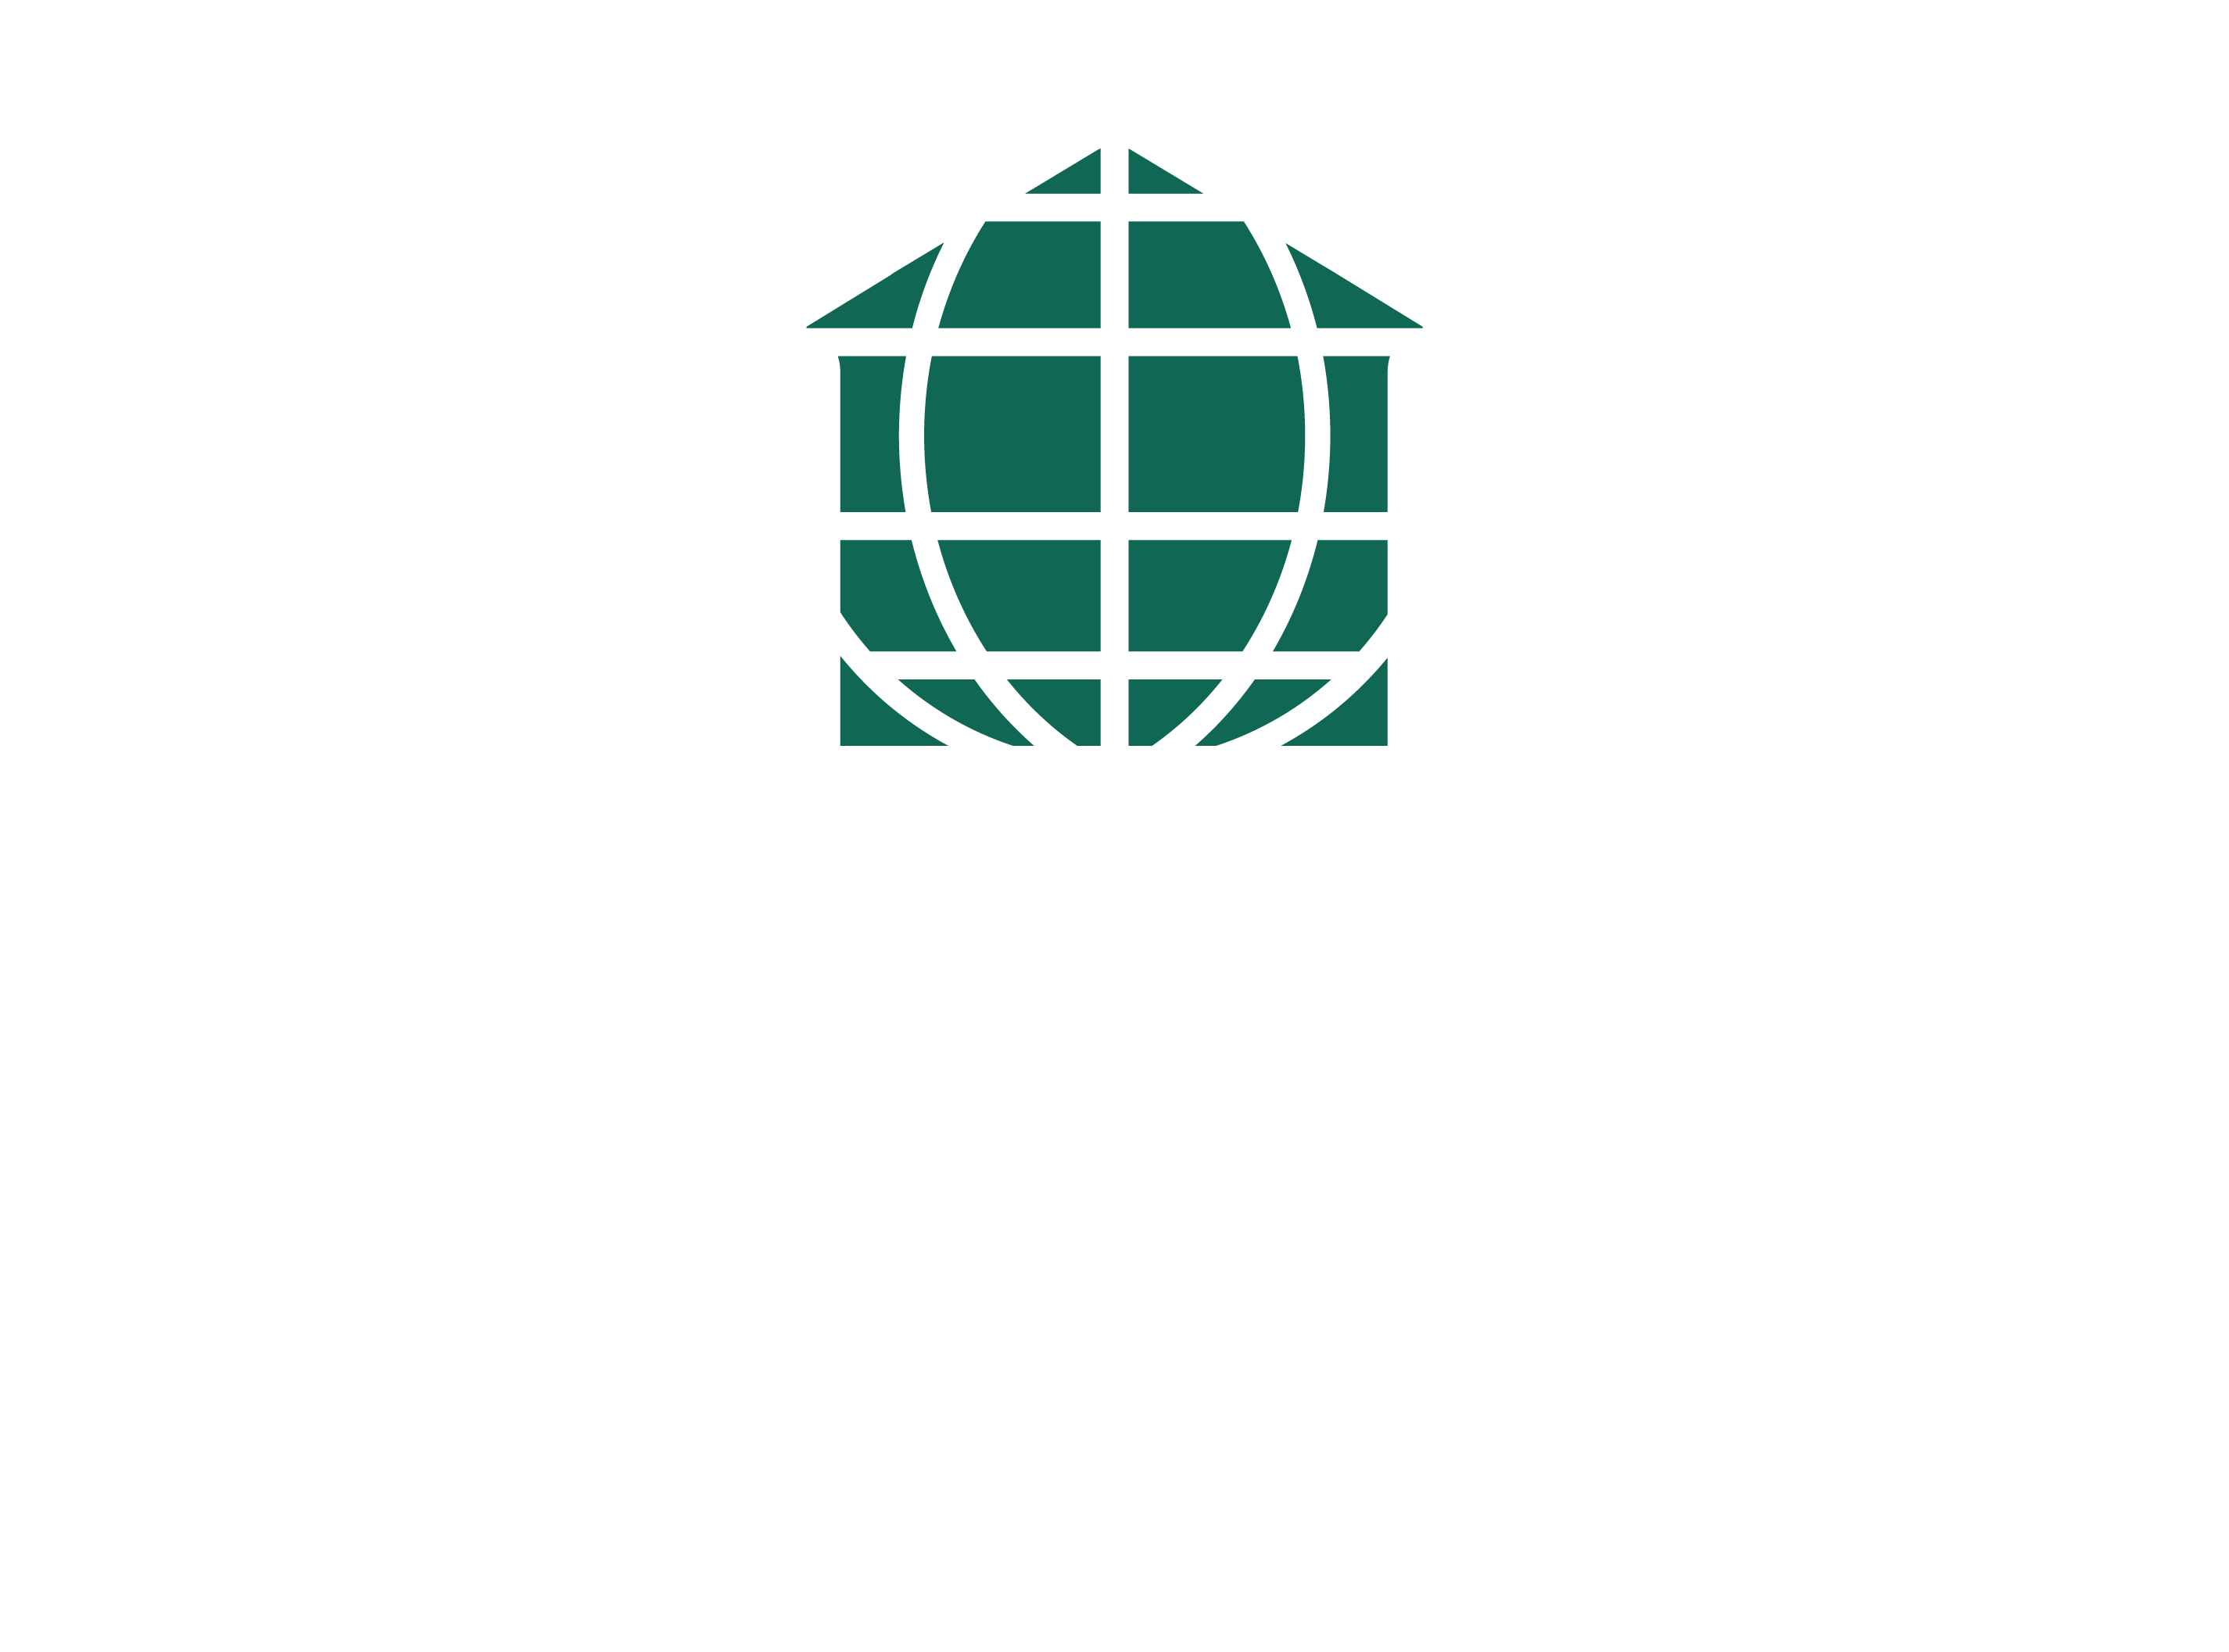 HEMP BLOCK USA